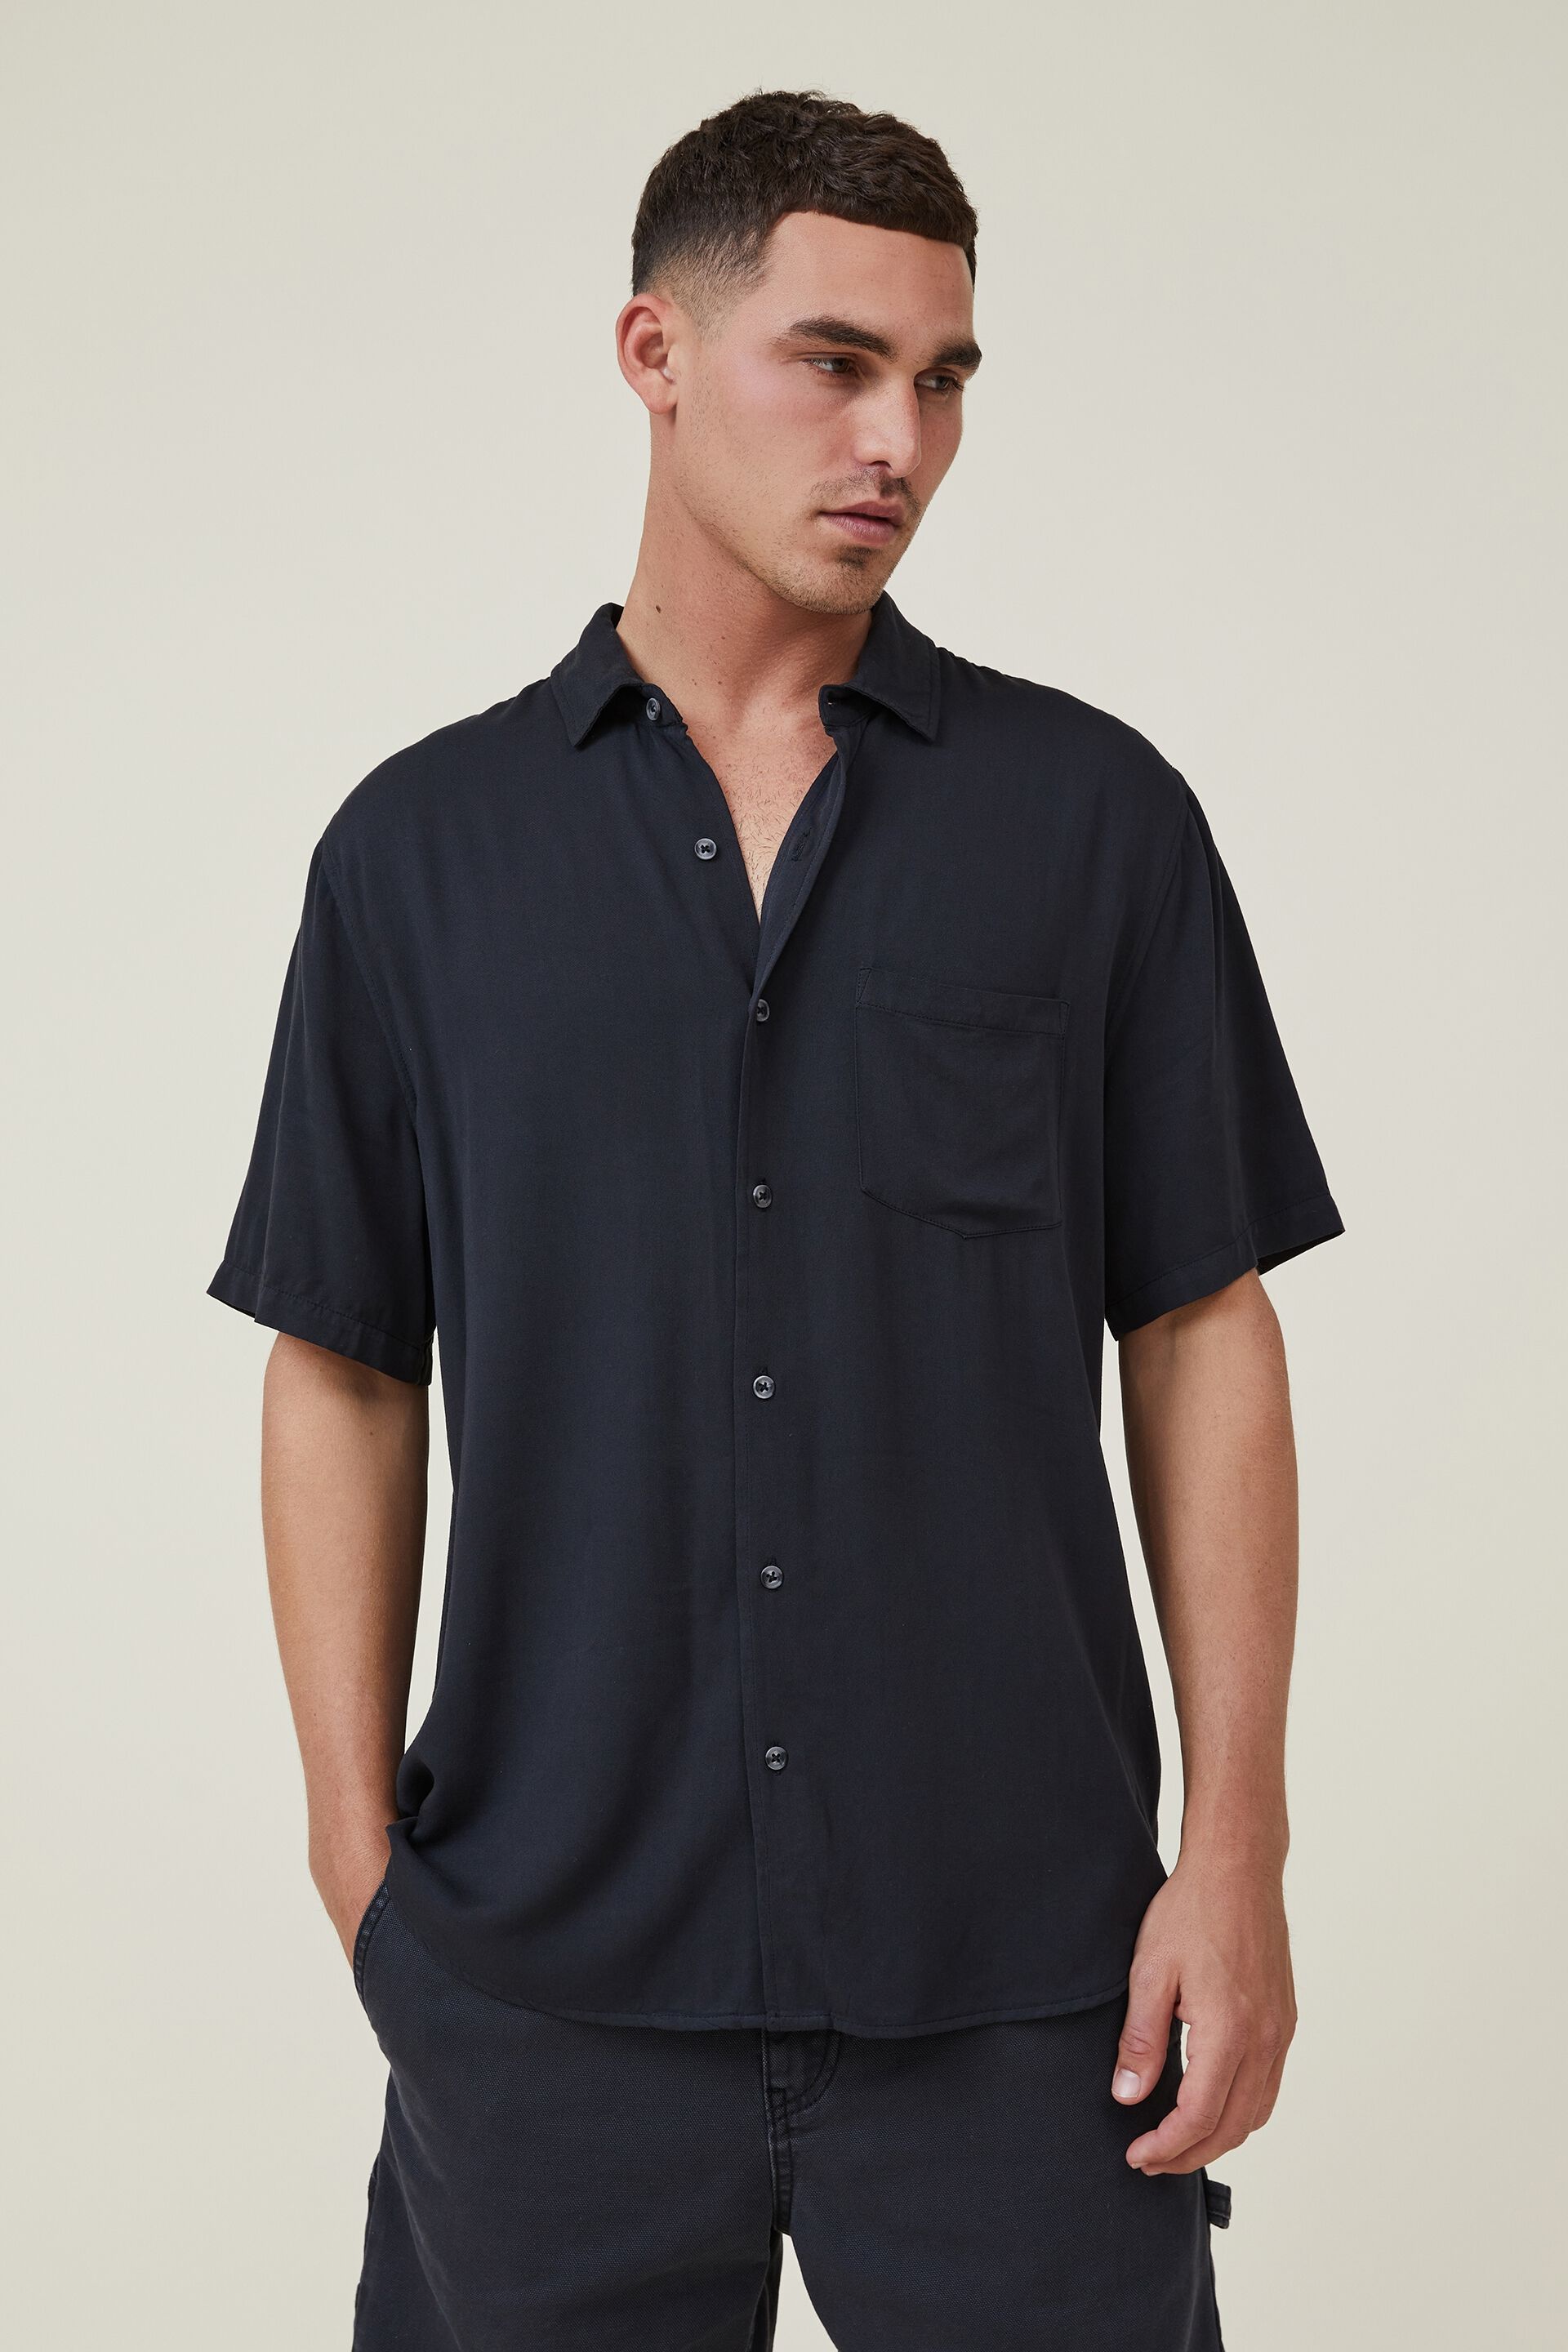 Men's Short Sleeve Shirts - Button Up ...